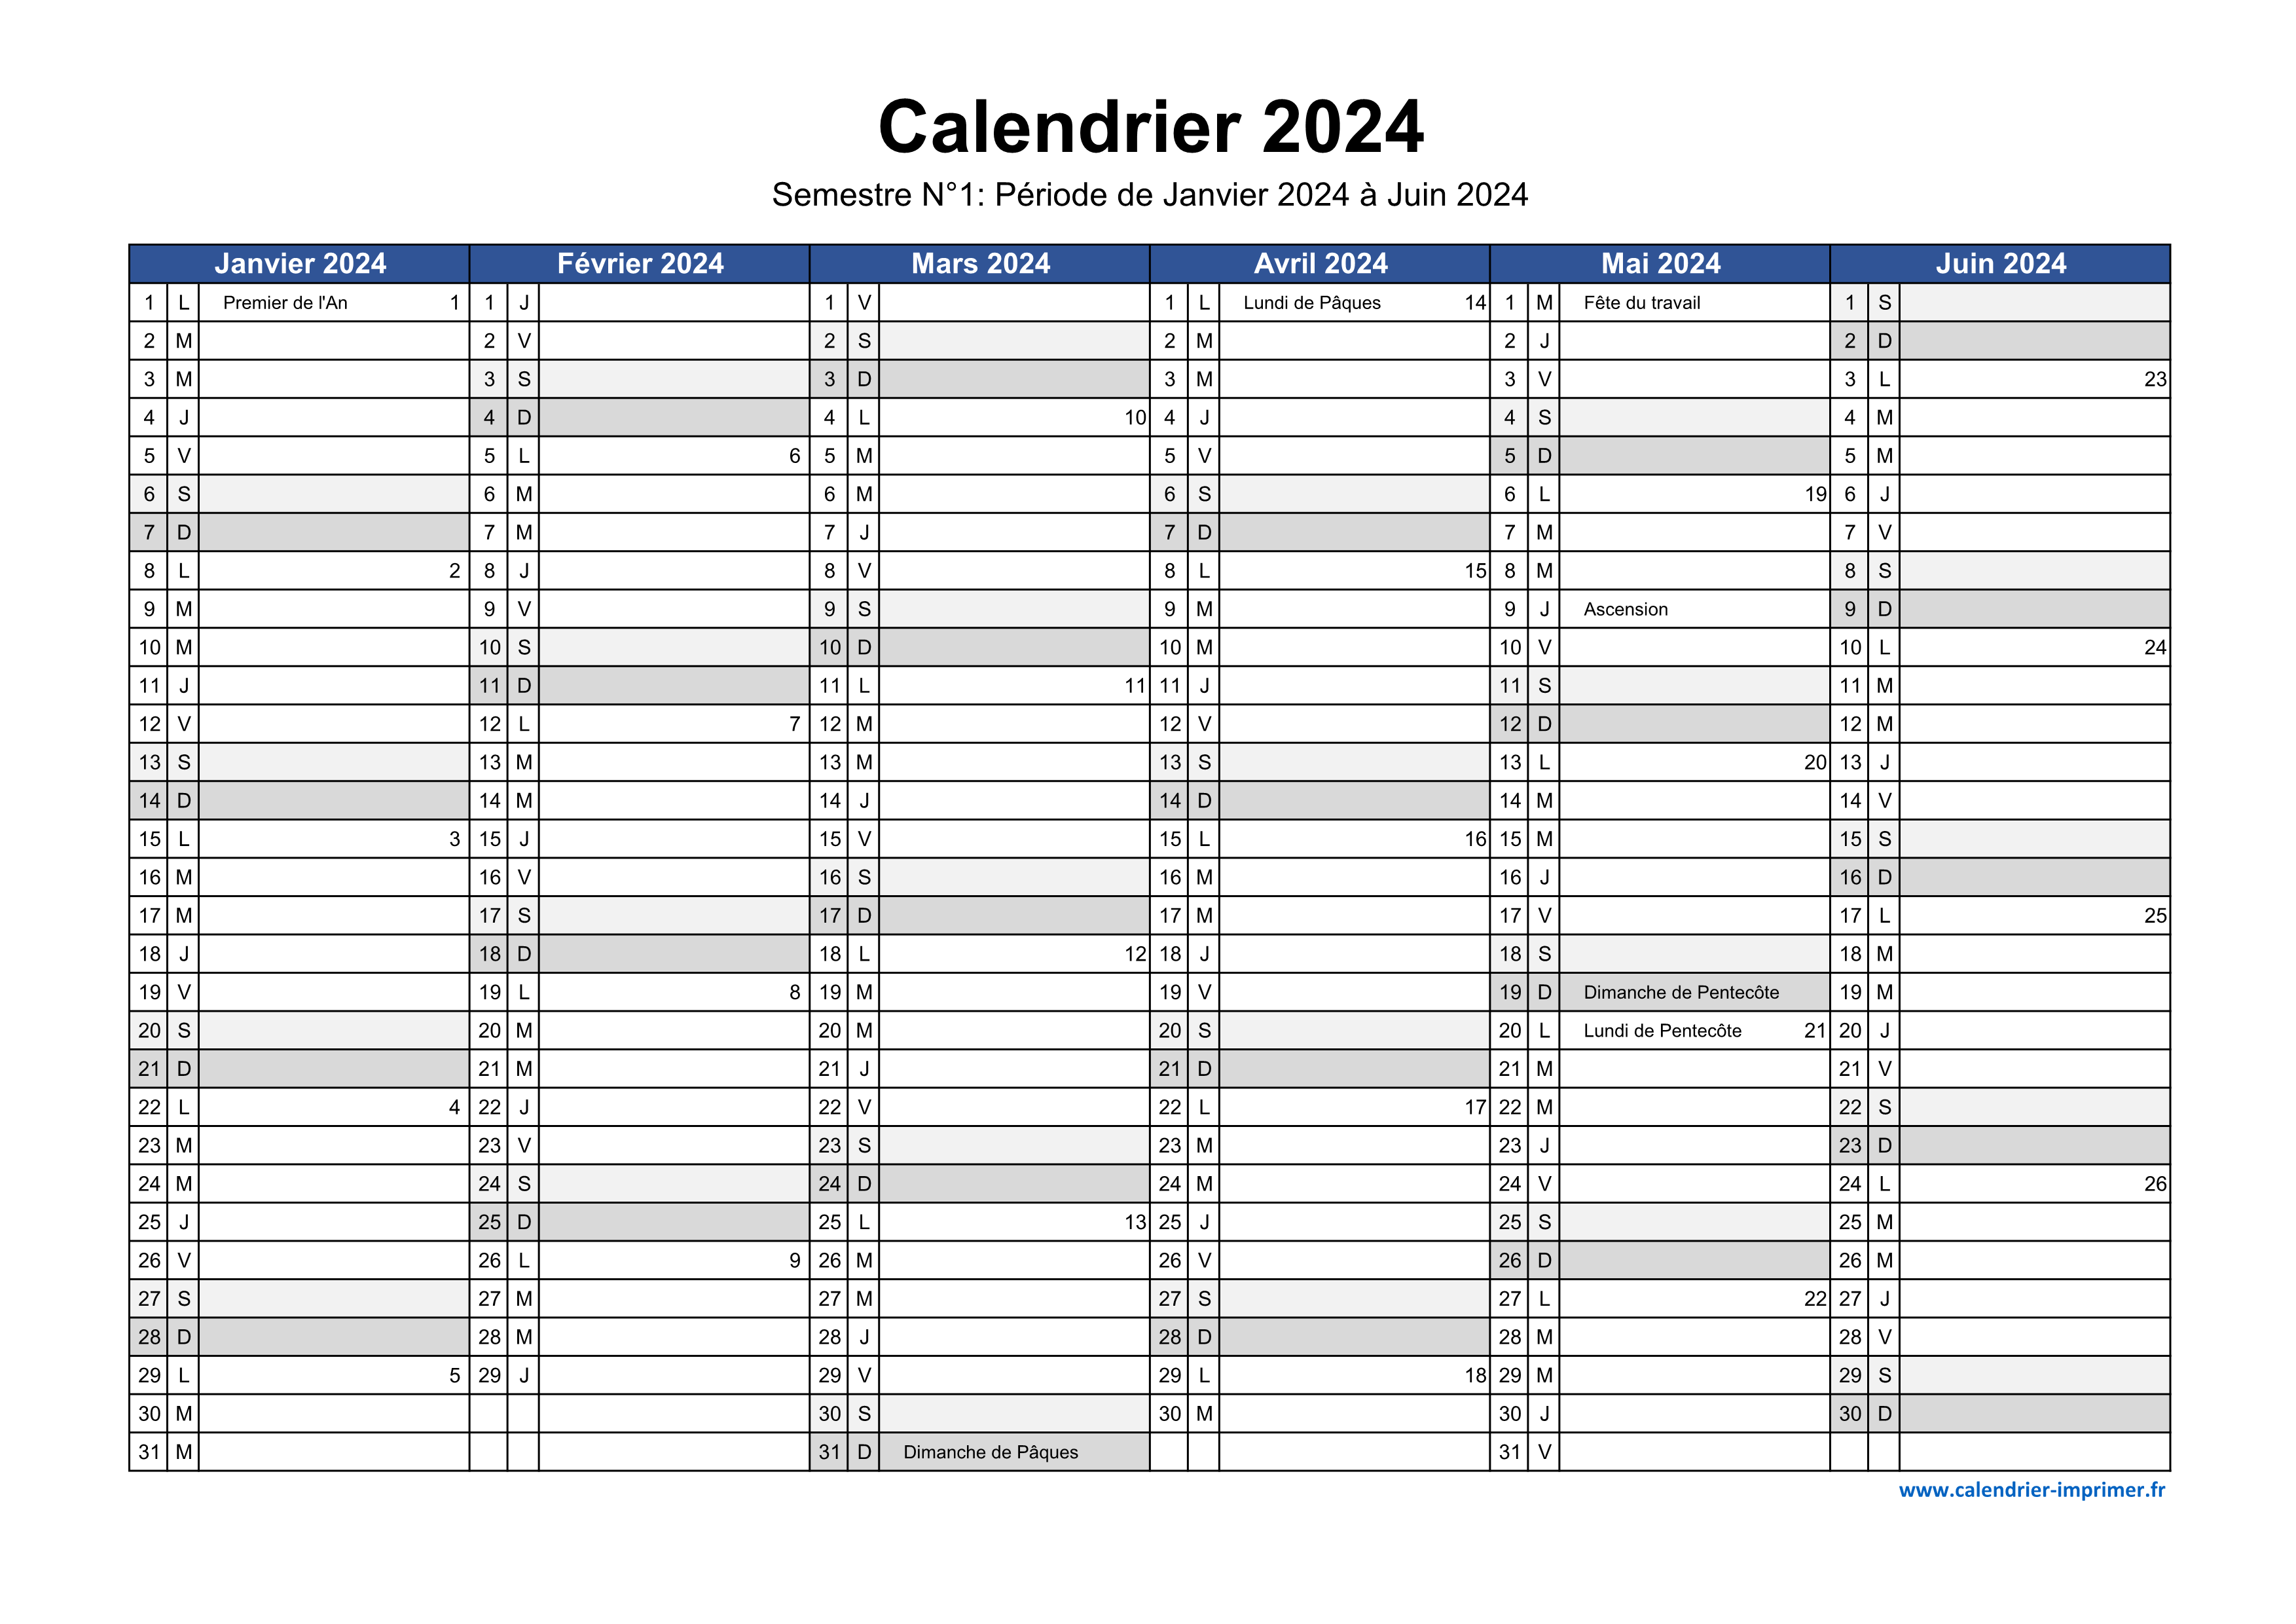 Calendrier Classique 2024 en PDF Gratuit à télécharger